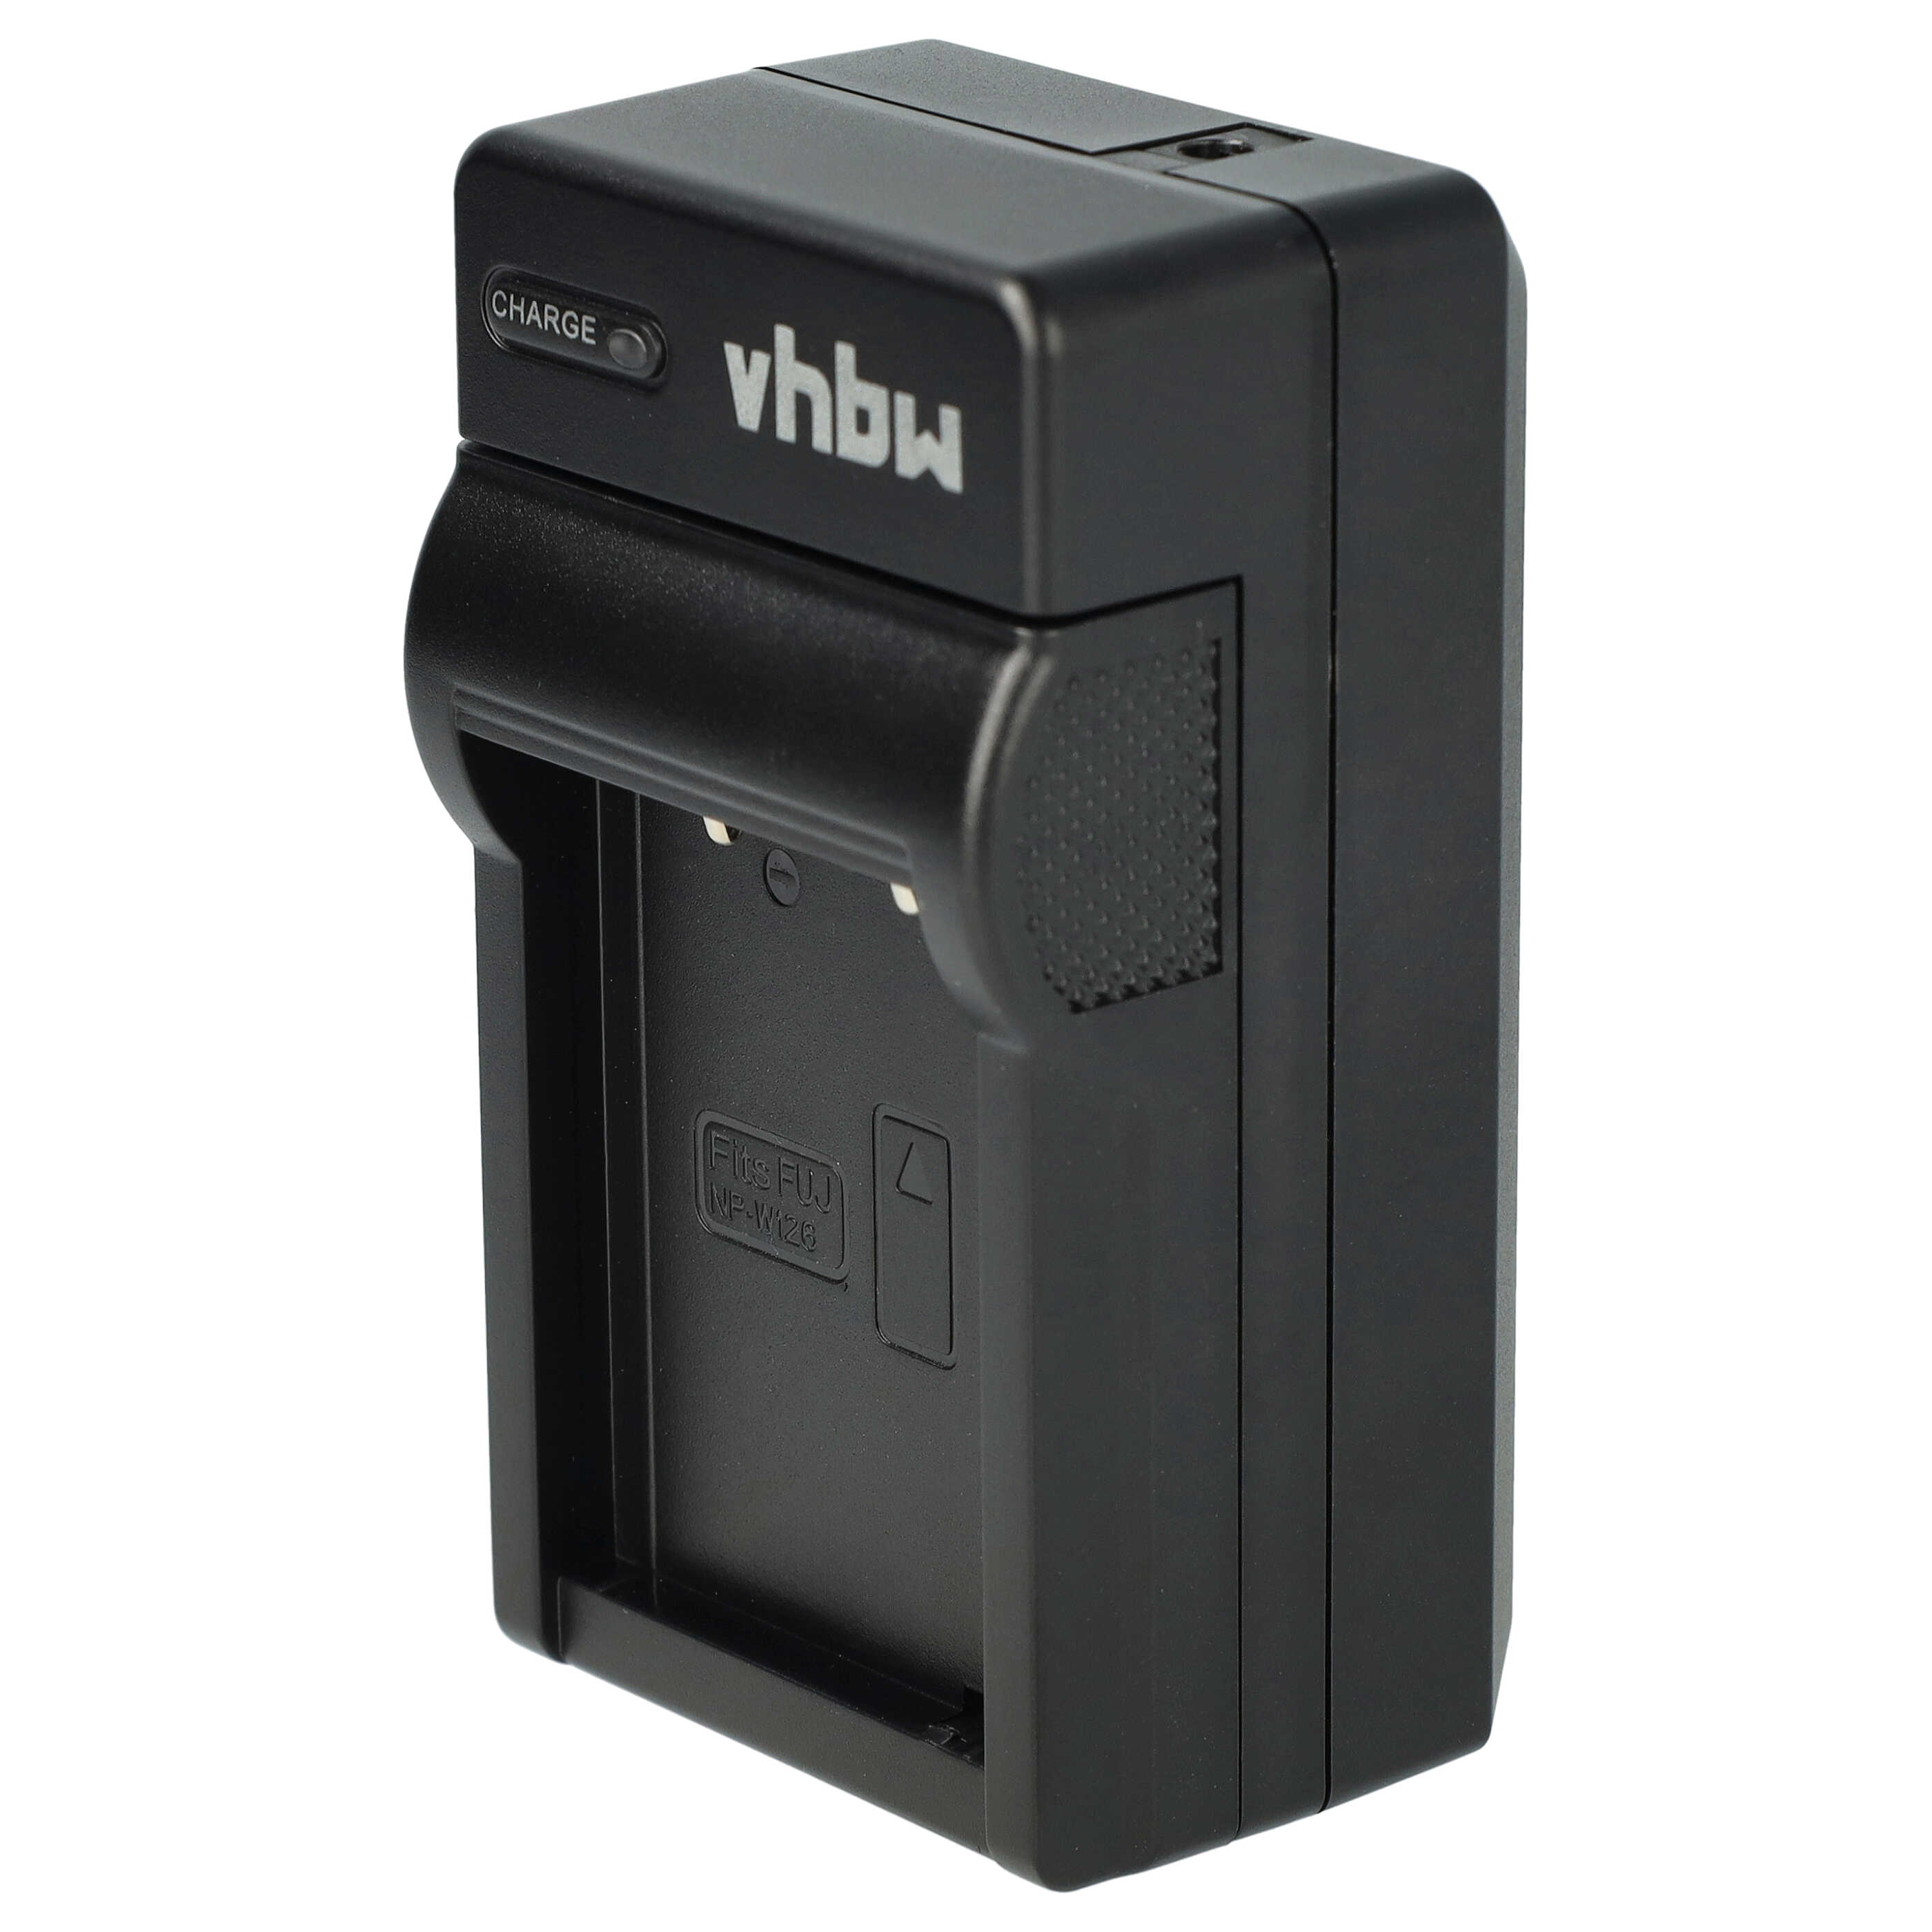 Akku Ladegerät passend für X-E1 Kamera u.a. - 0,6 A, 8,4 V